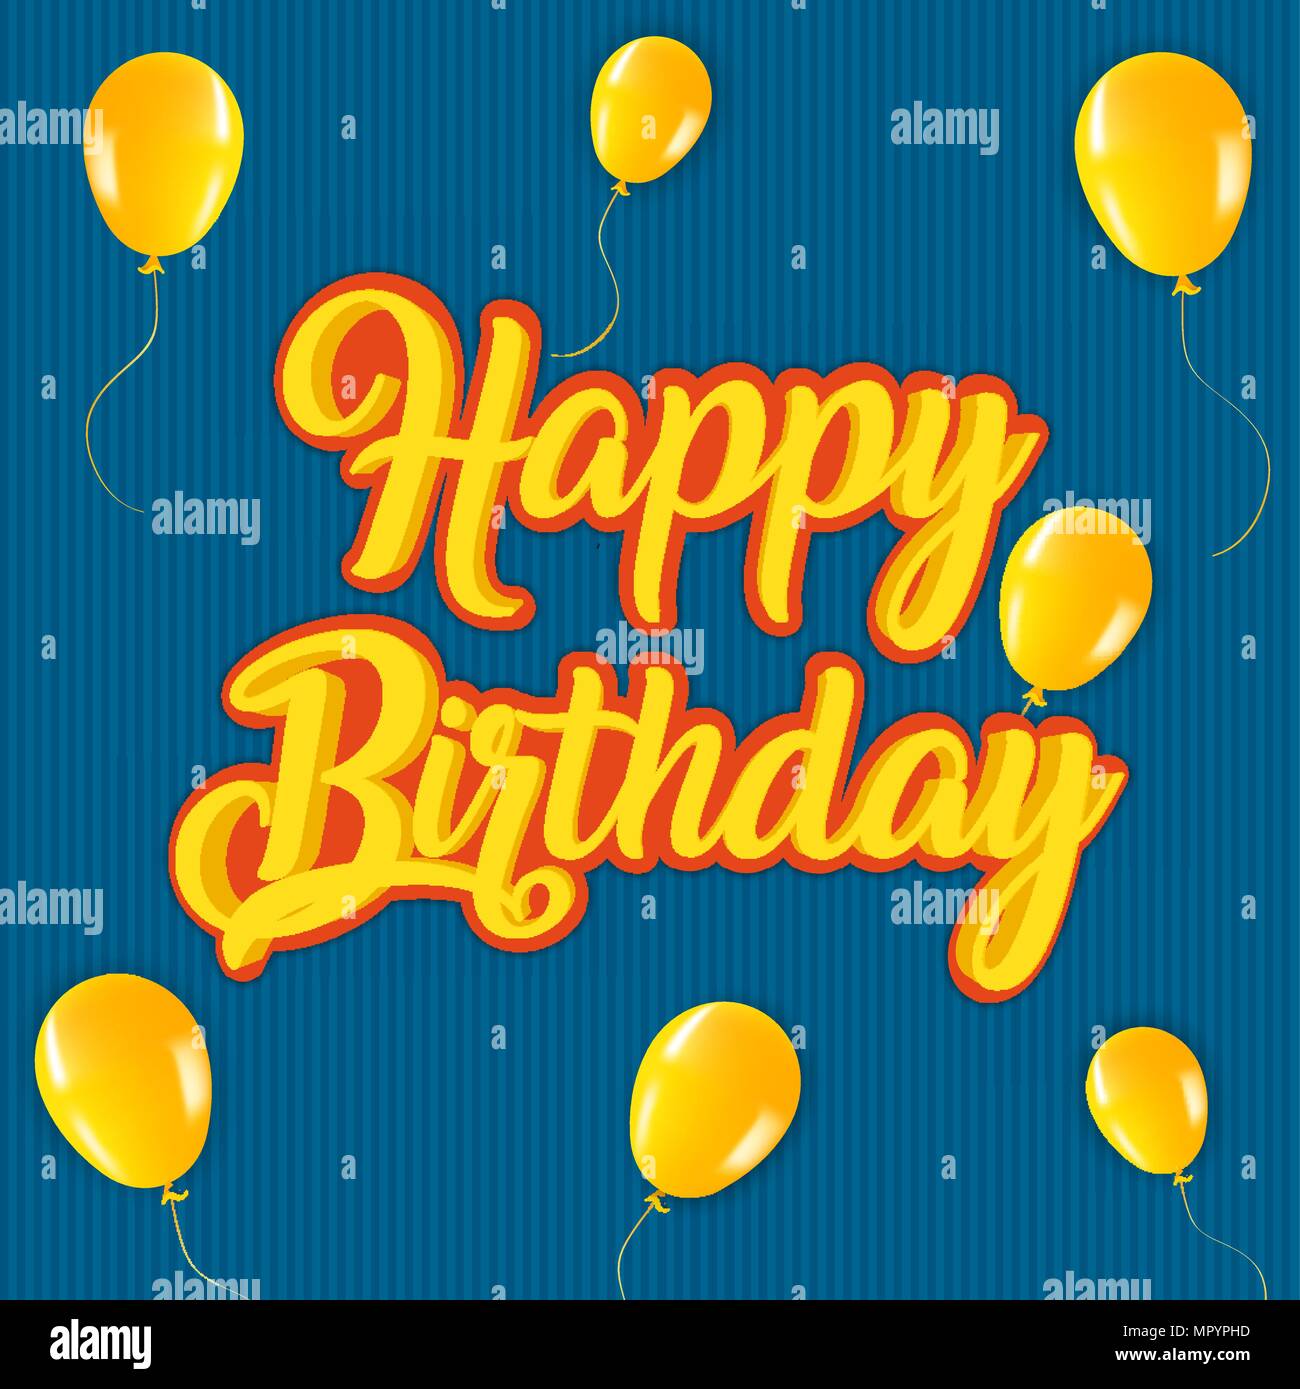 Joyeux anniversaire retro style carte postale avec vintage typographie citer et ballon parti décoration. Vecteur EPS10. Illustration de Vecteur